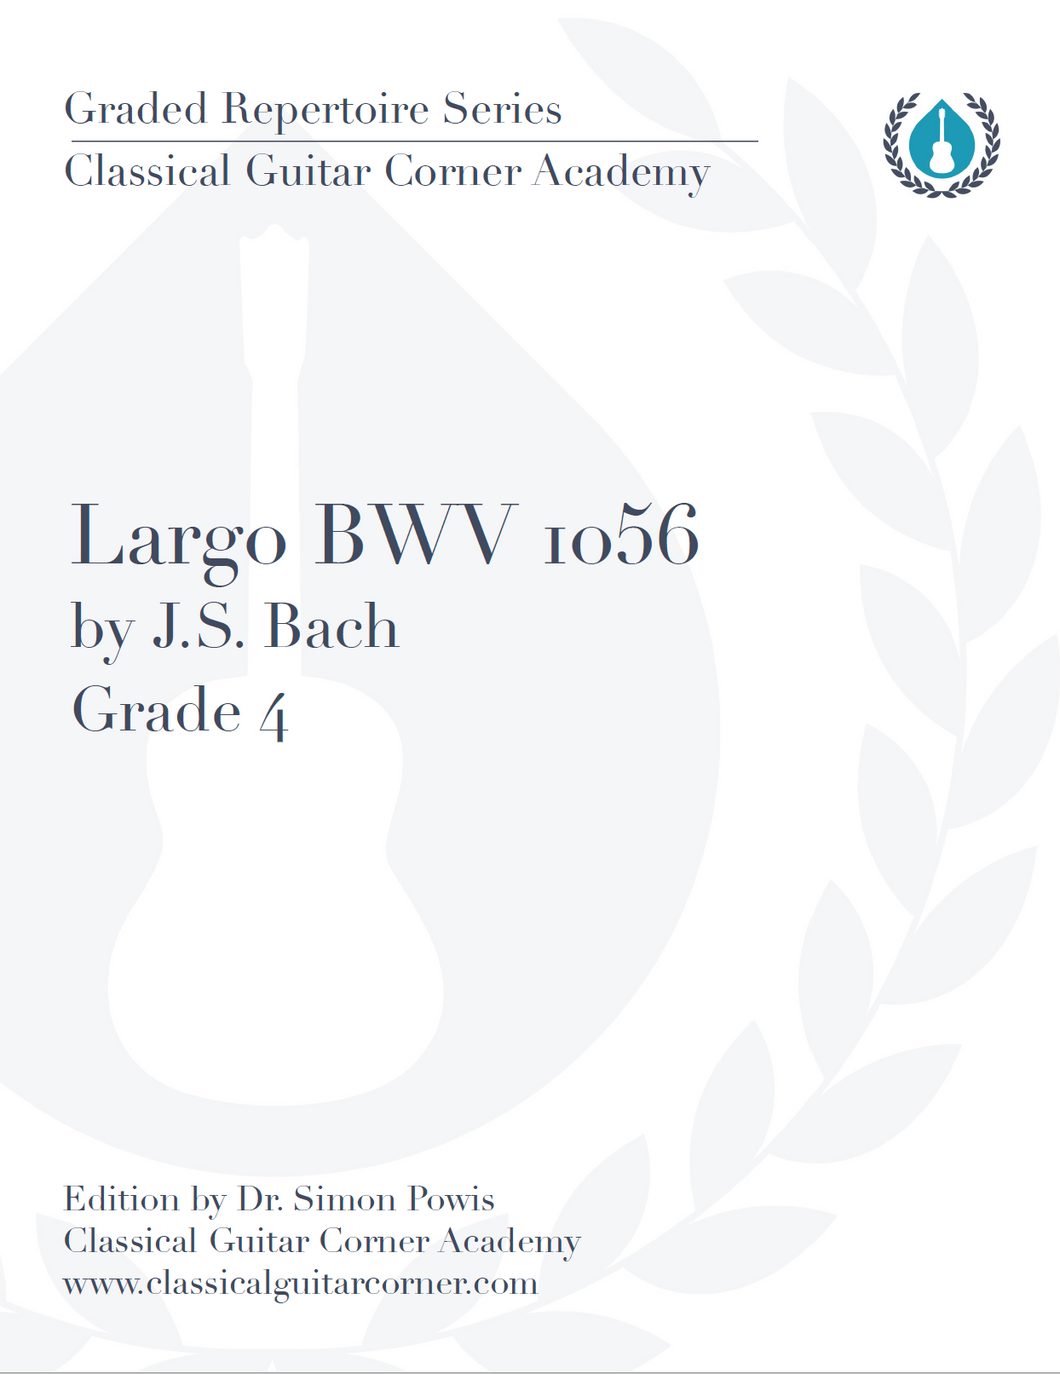 Largo BWV 1056 by J.S. Bach